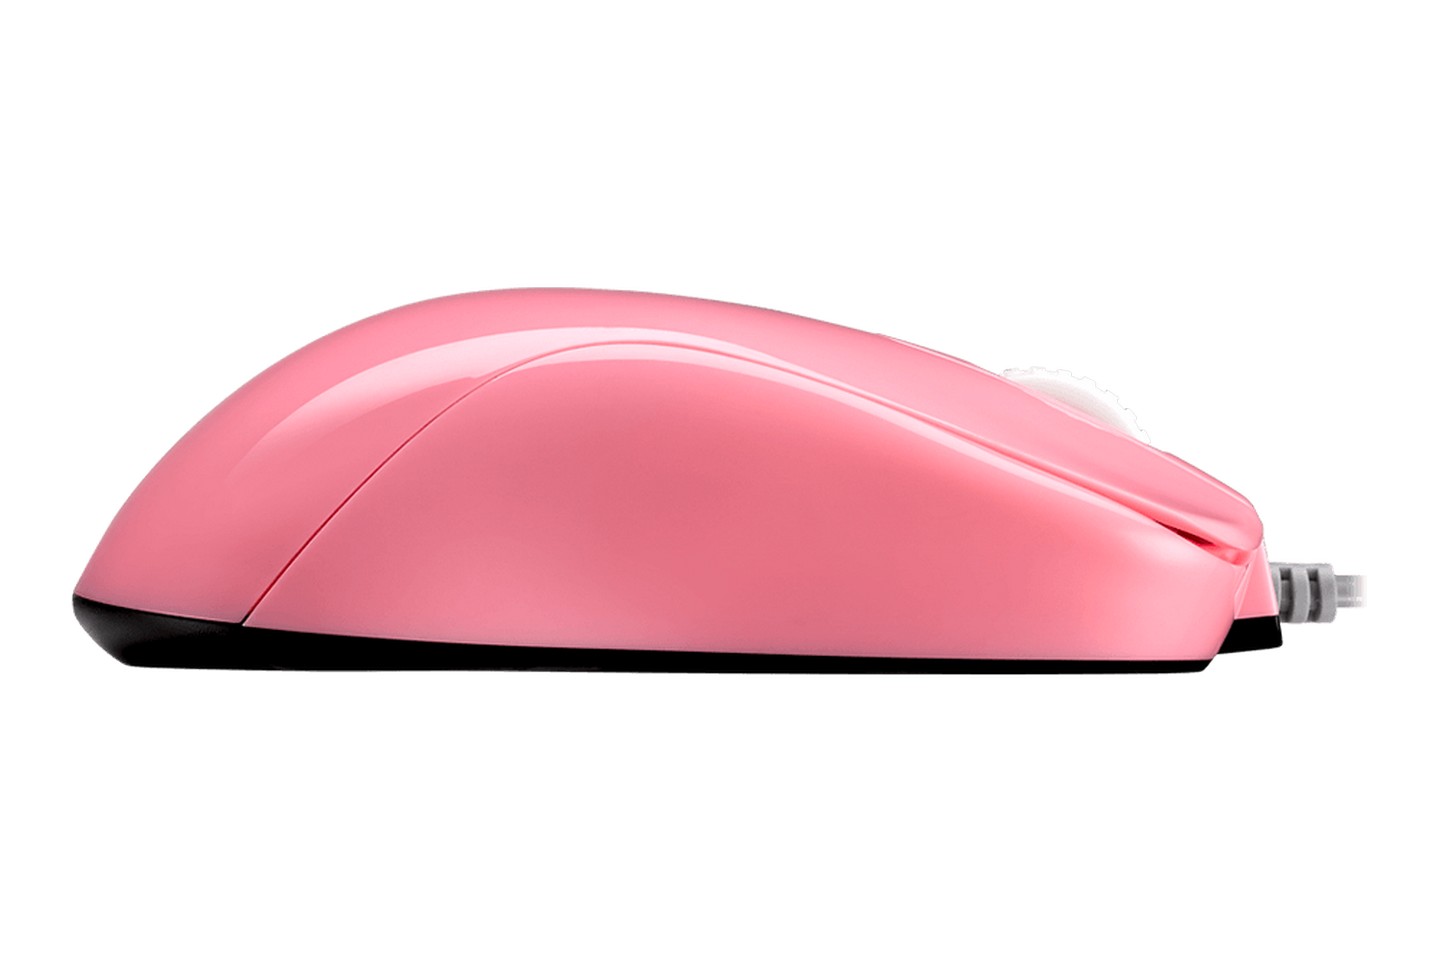 Chuột Zowie S1 Divina Pink cung cấp thiết kế không cần trình điều khiển